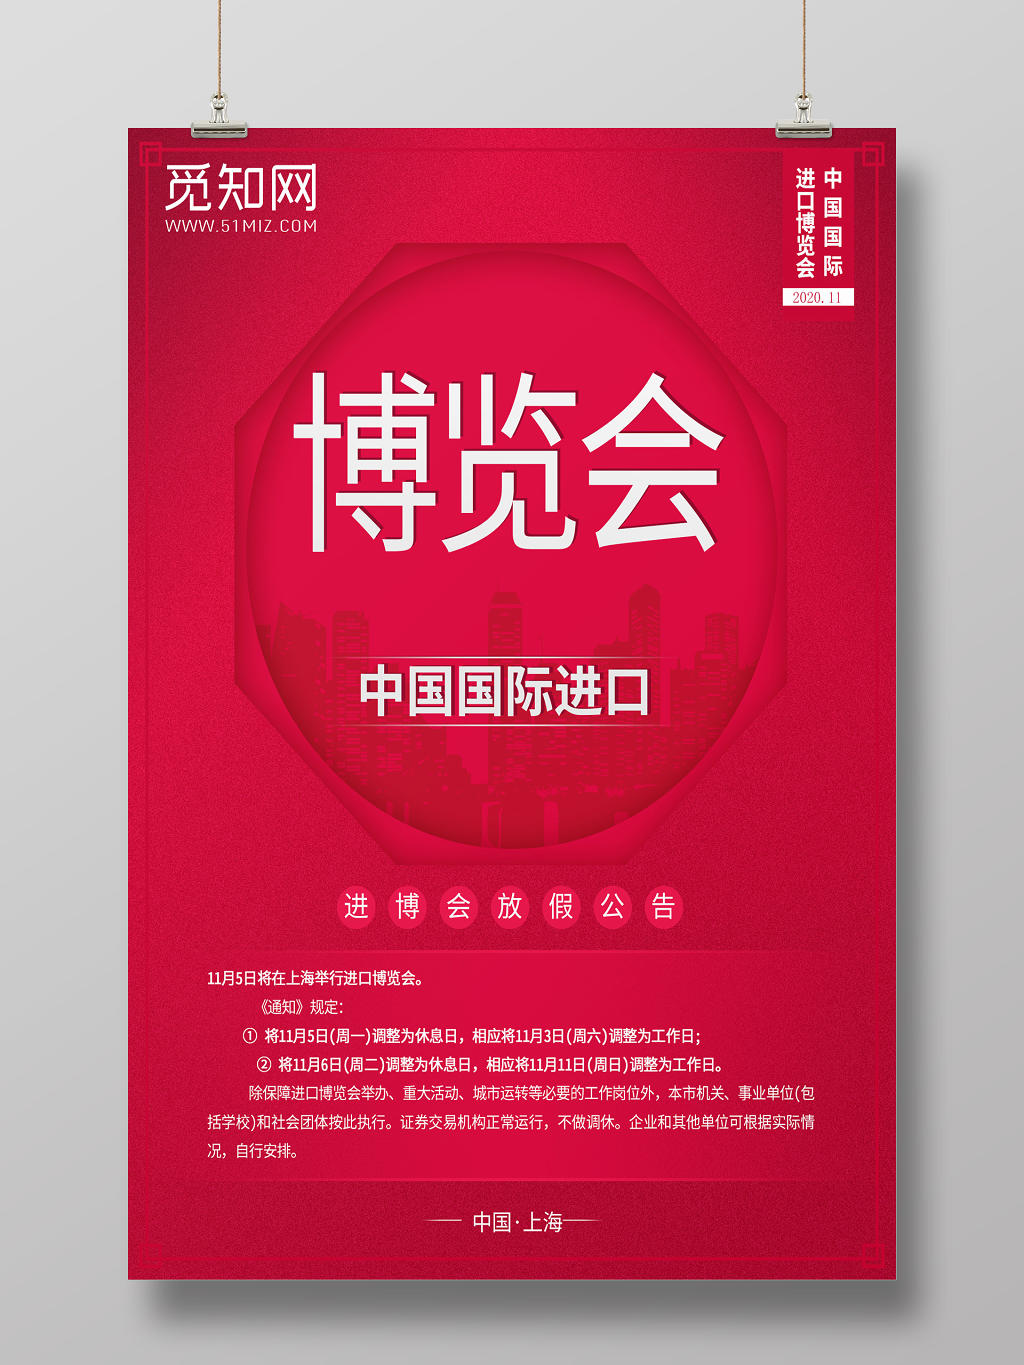 红色背景第二届进口博览会海报